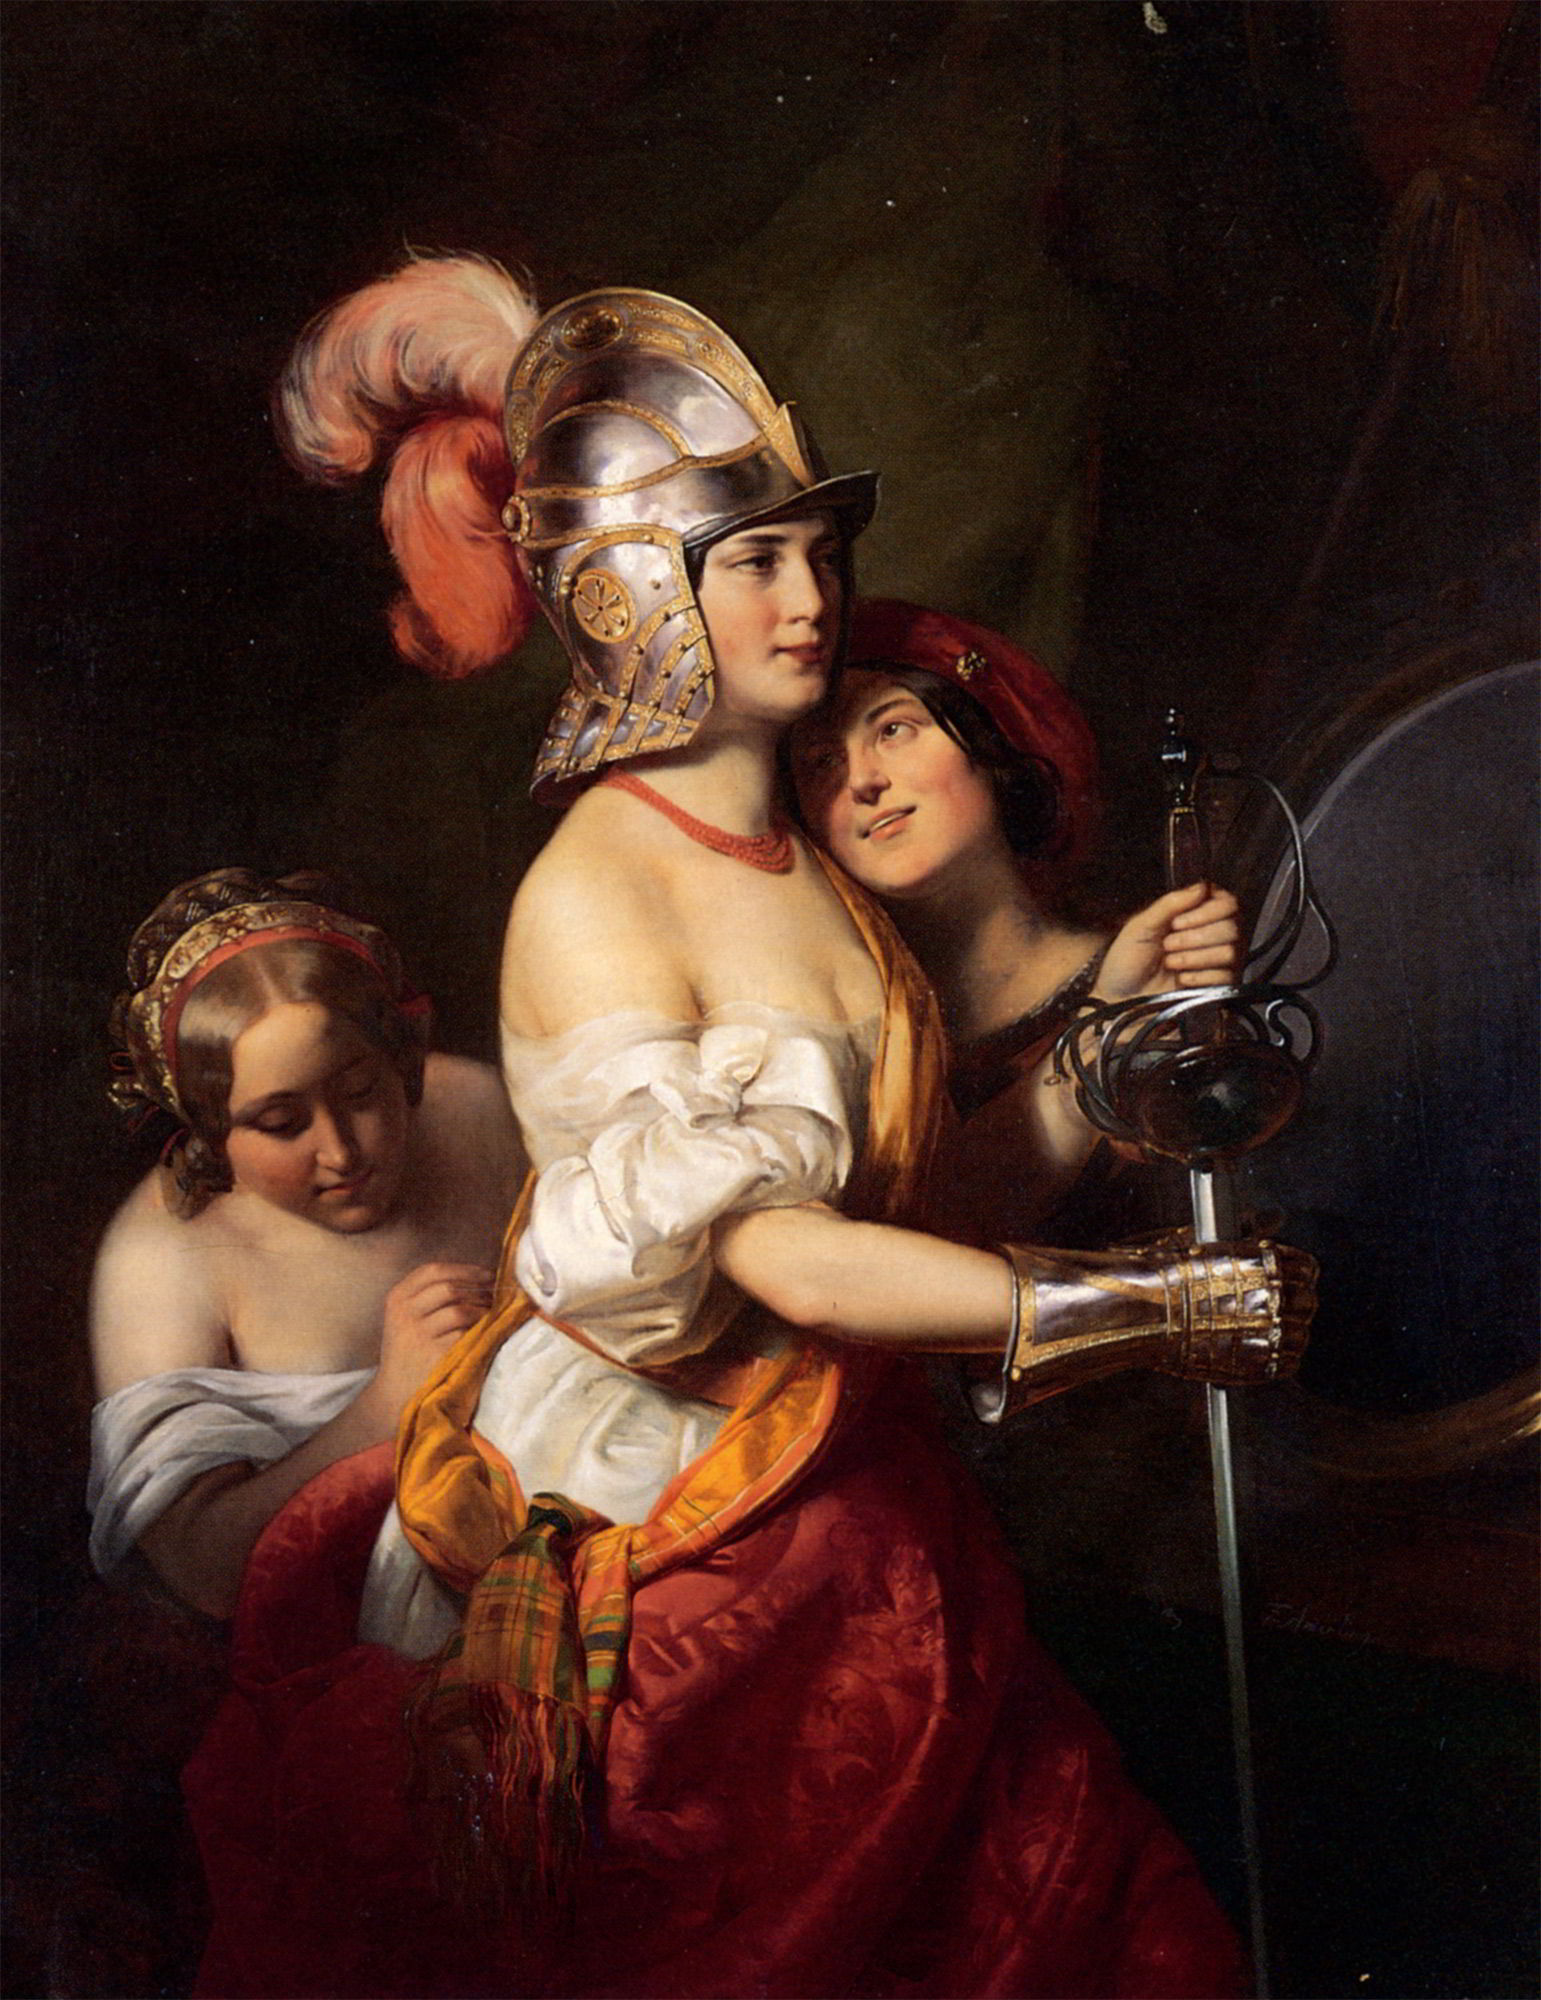 The Armed Maiden by Friedrich von Amerling